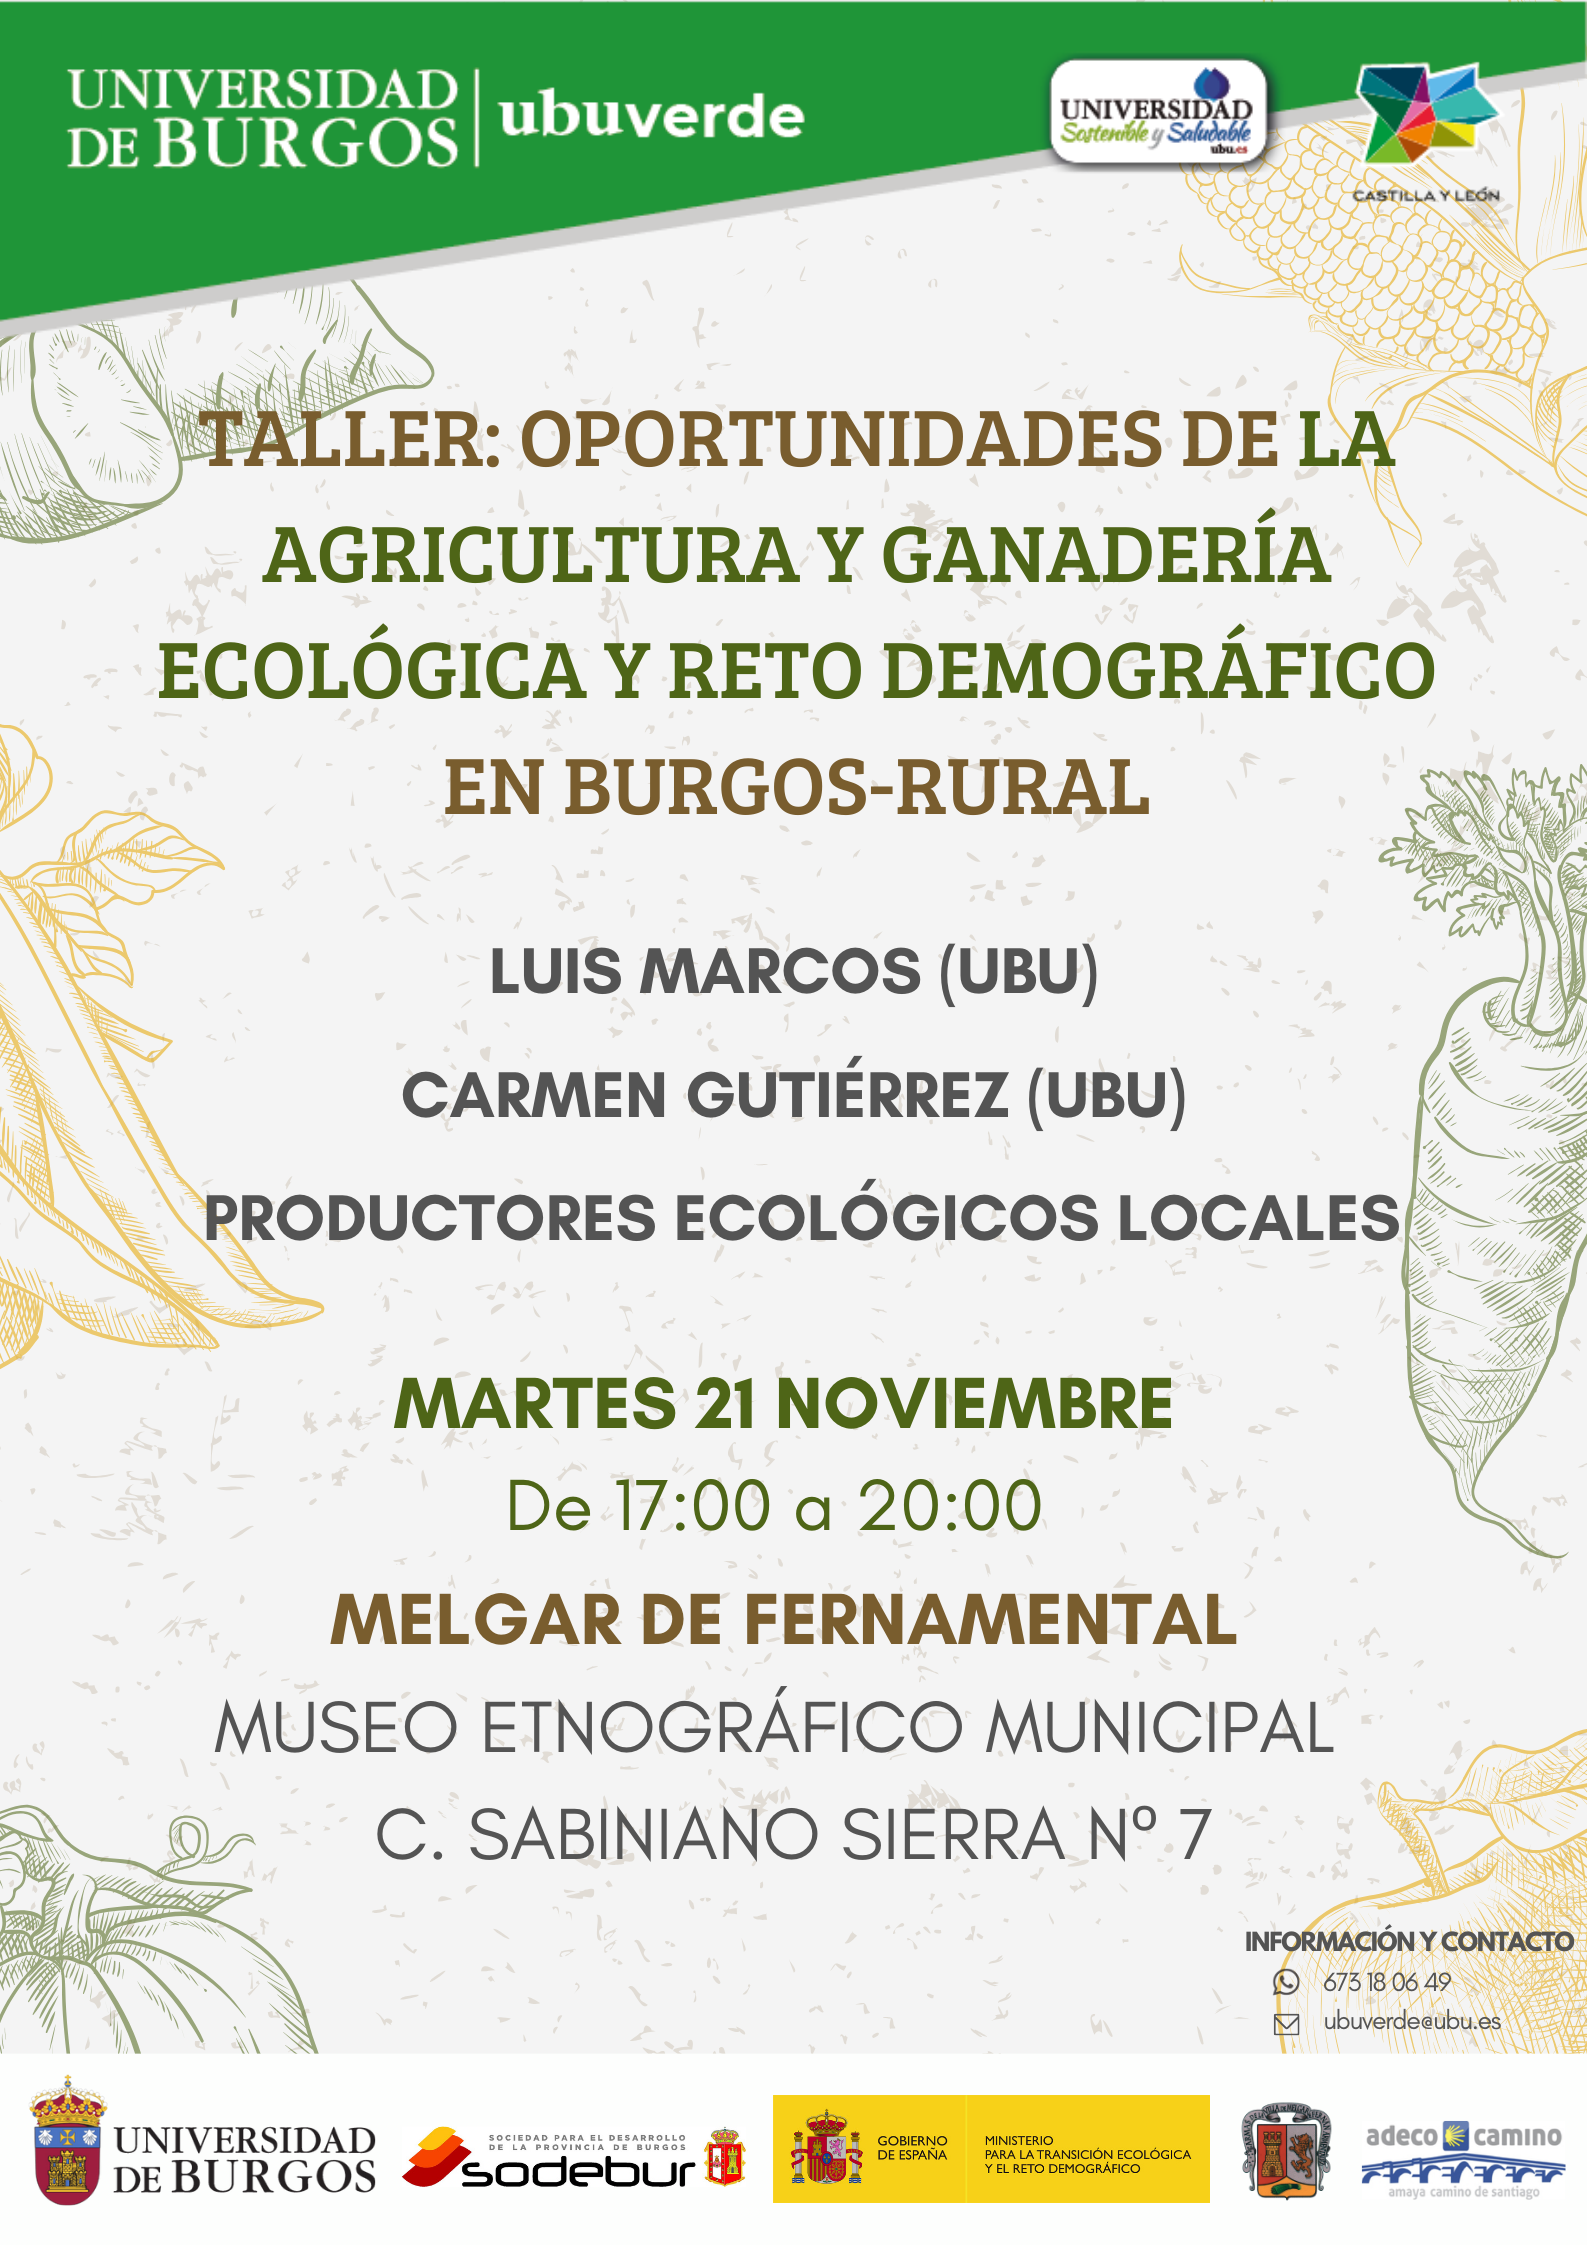 Taller: Oportunidades de la Agricultura y Ganadería Ecológica y Reto Demográfico en Burgos-Rural